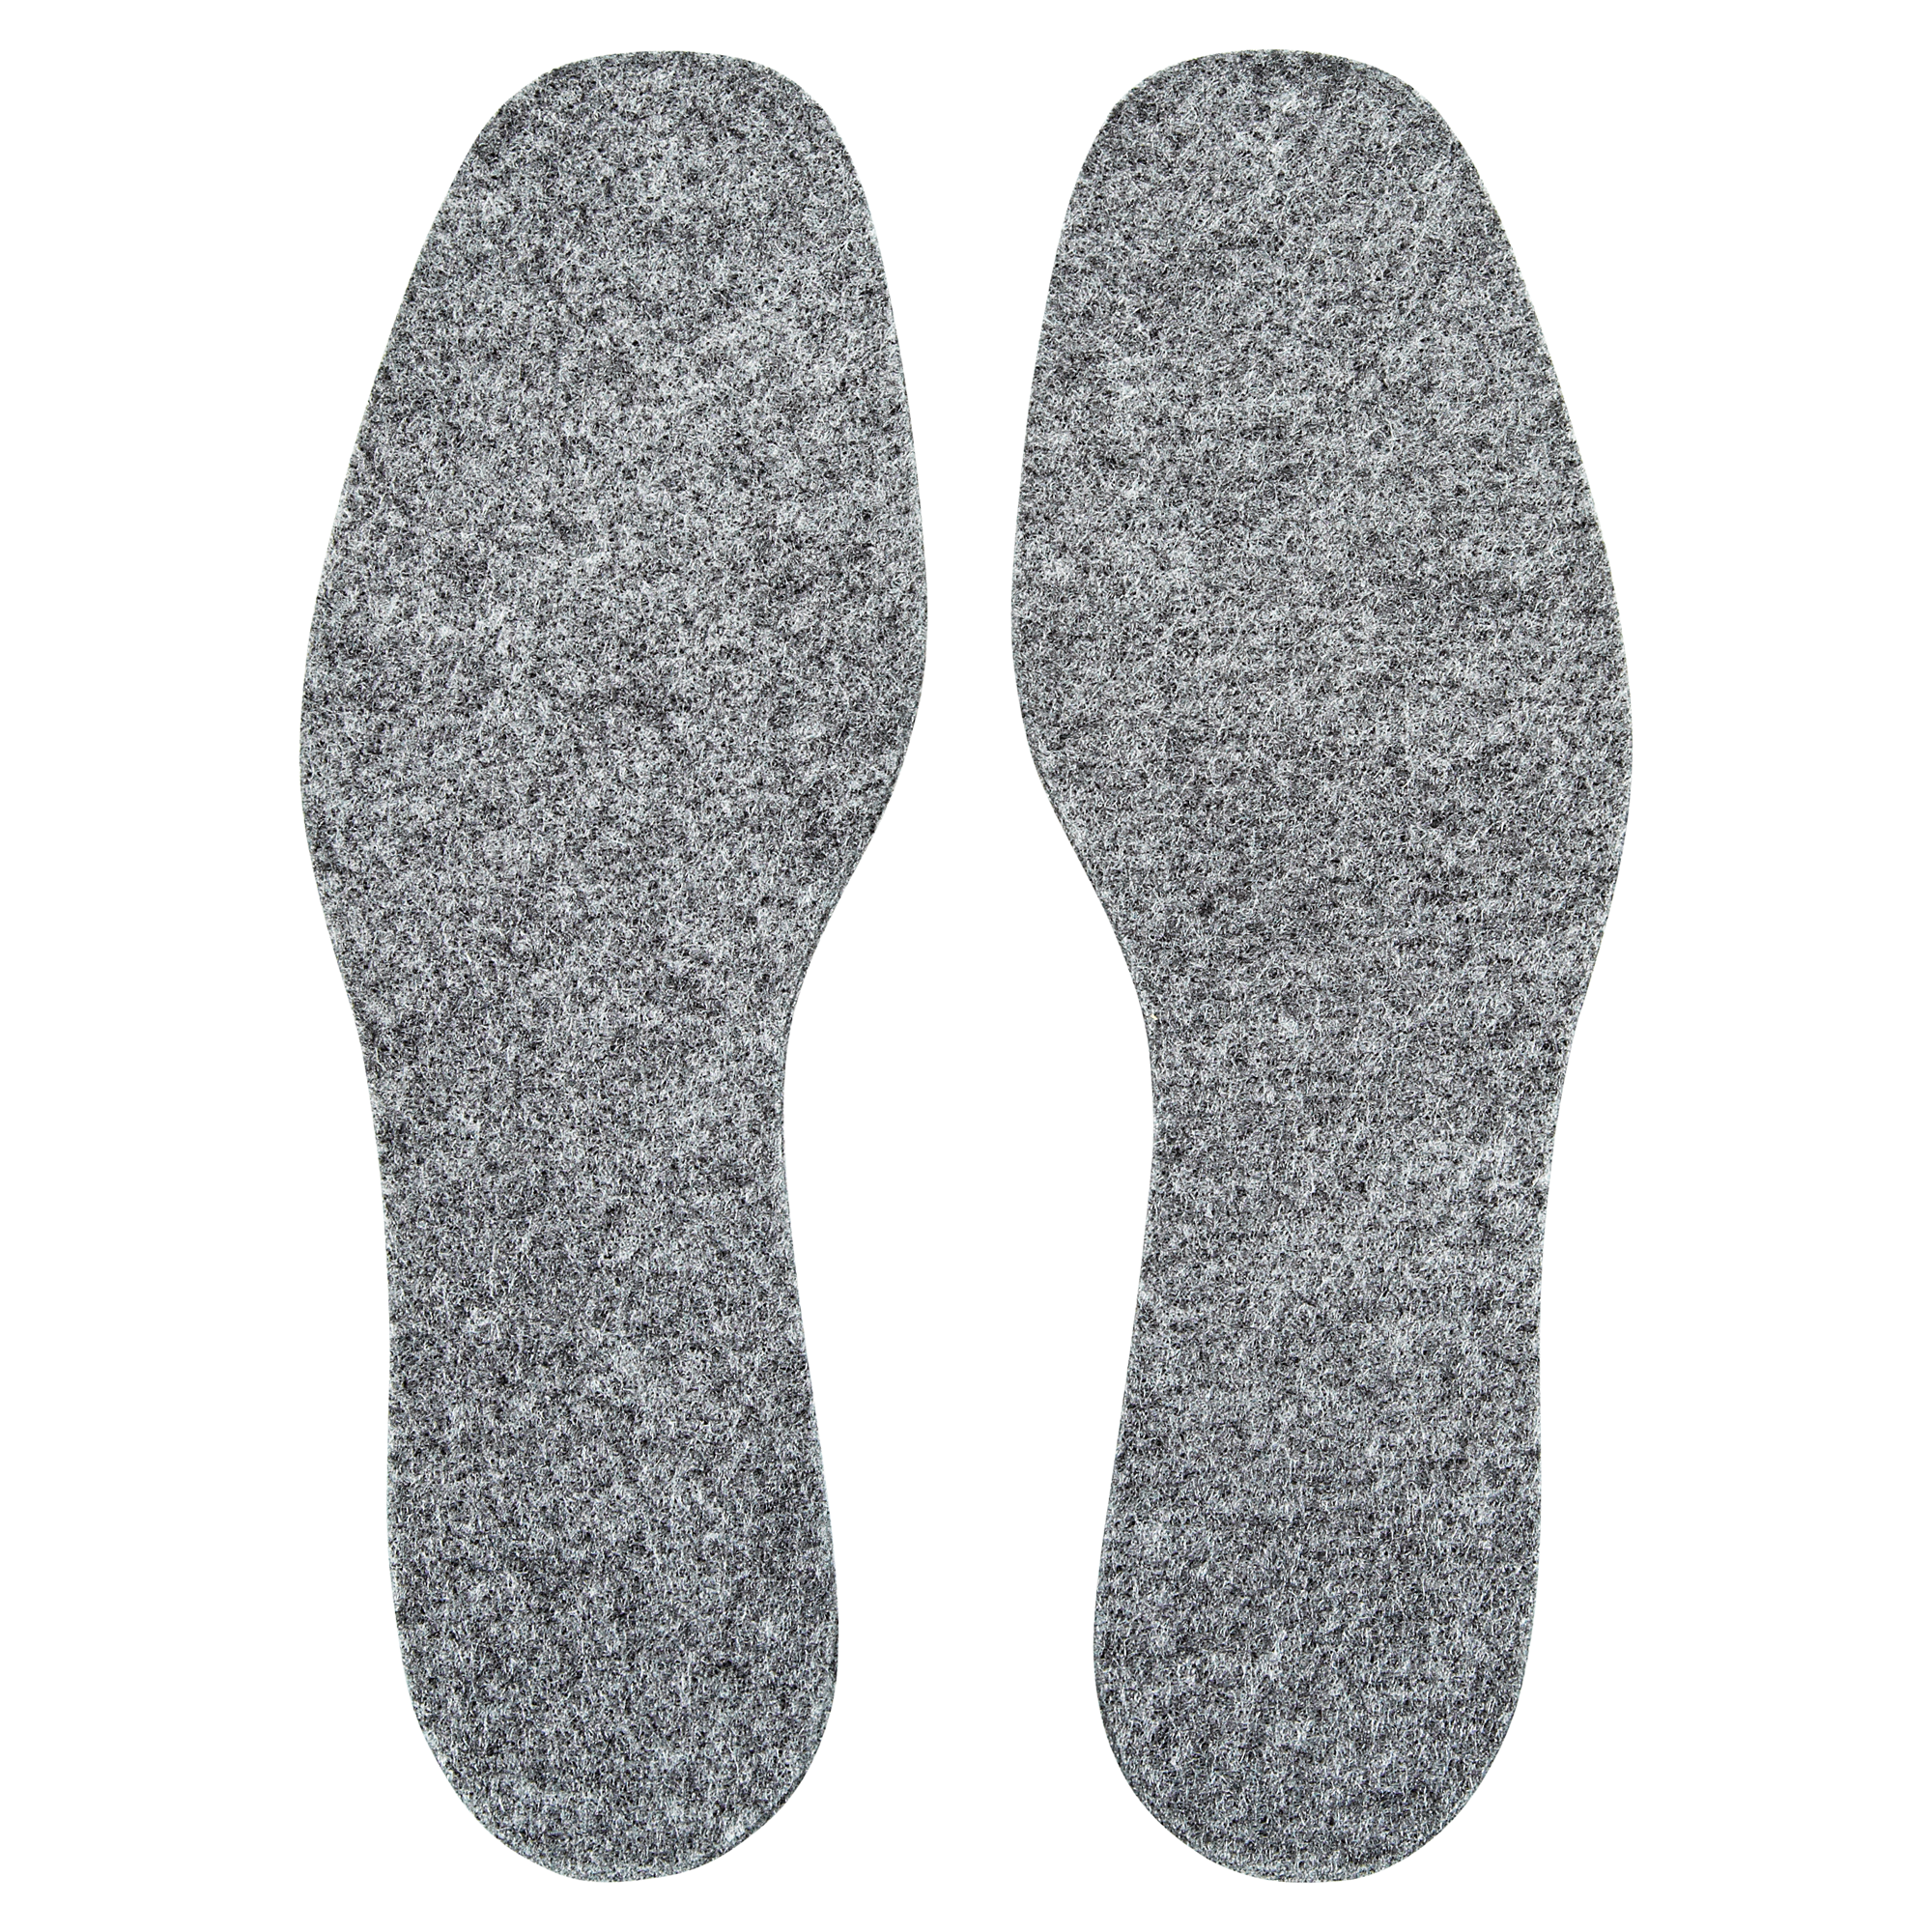 Einlegesohlen für Outdoor-Schuhe "Kiwi" Gr. 46/47 + product picture